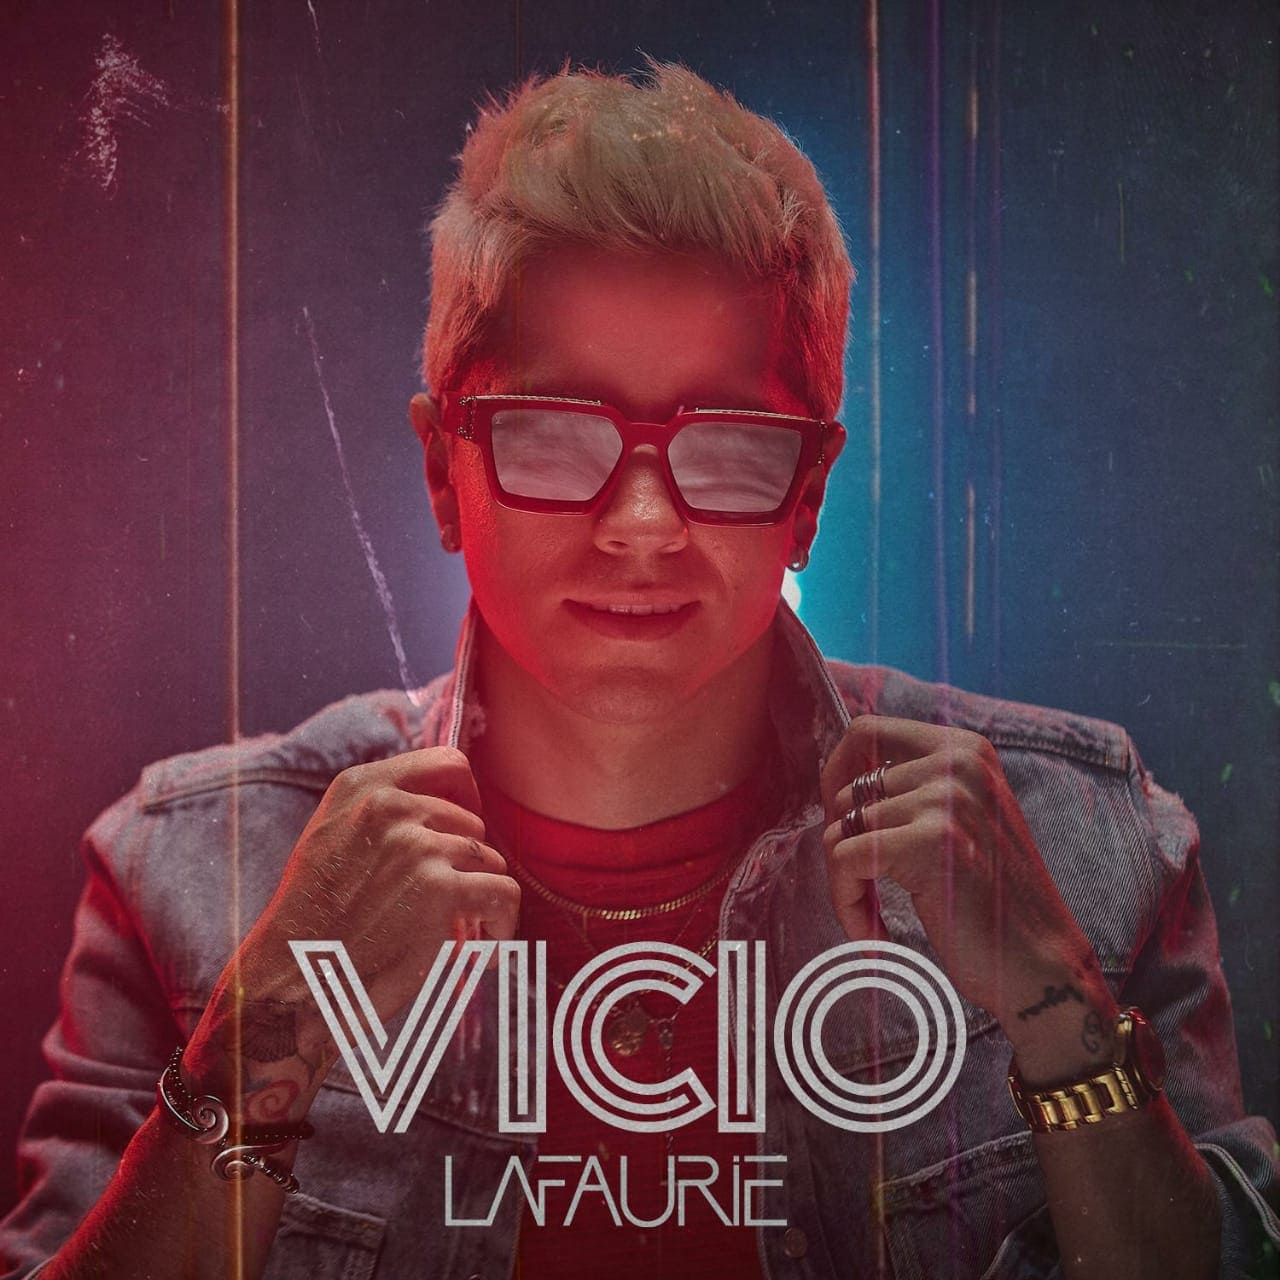 En este momento estás viendo El colombiano LaFaurie presenta su nuevo sencillo “Vicio” en todas las plataformas digitales